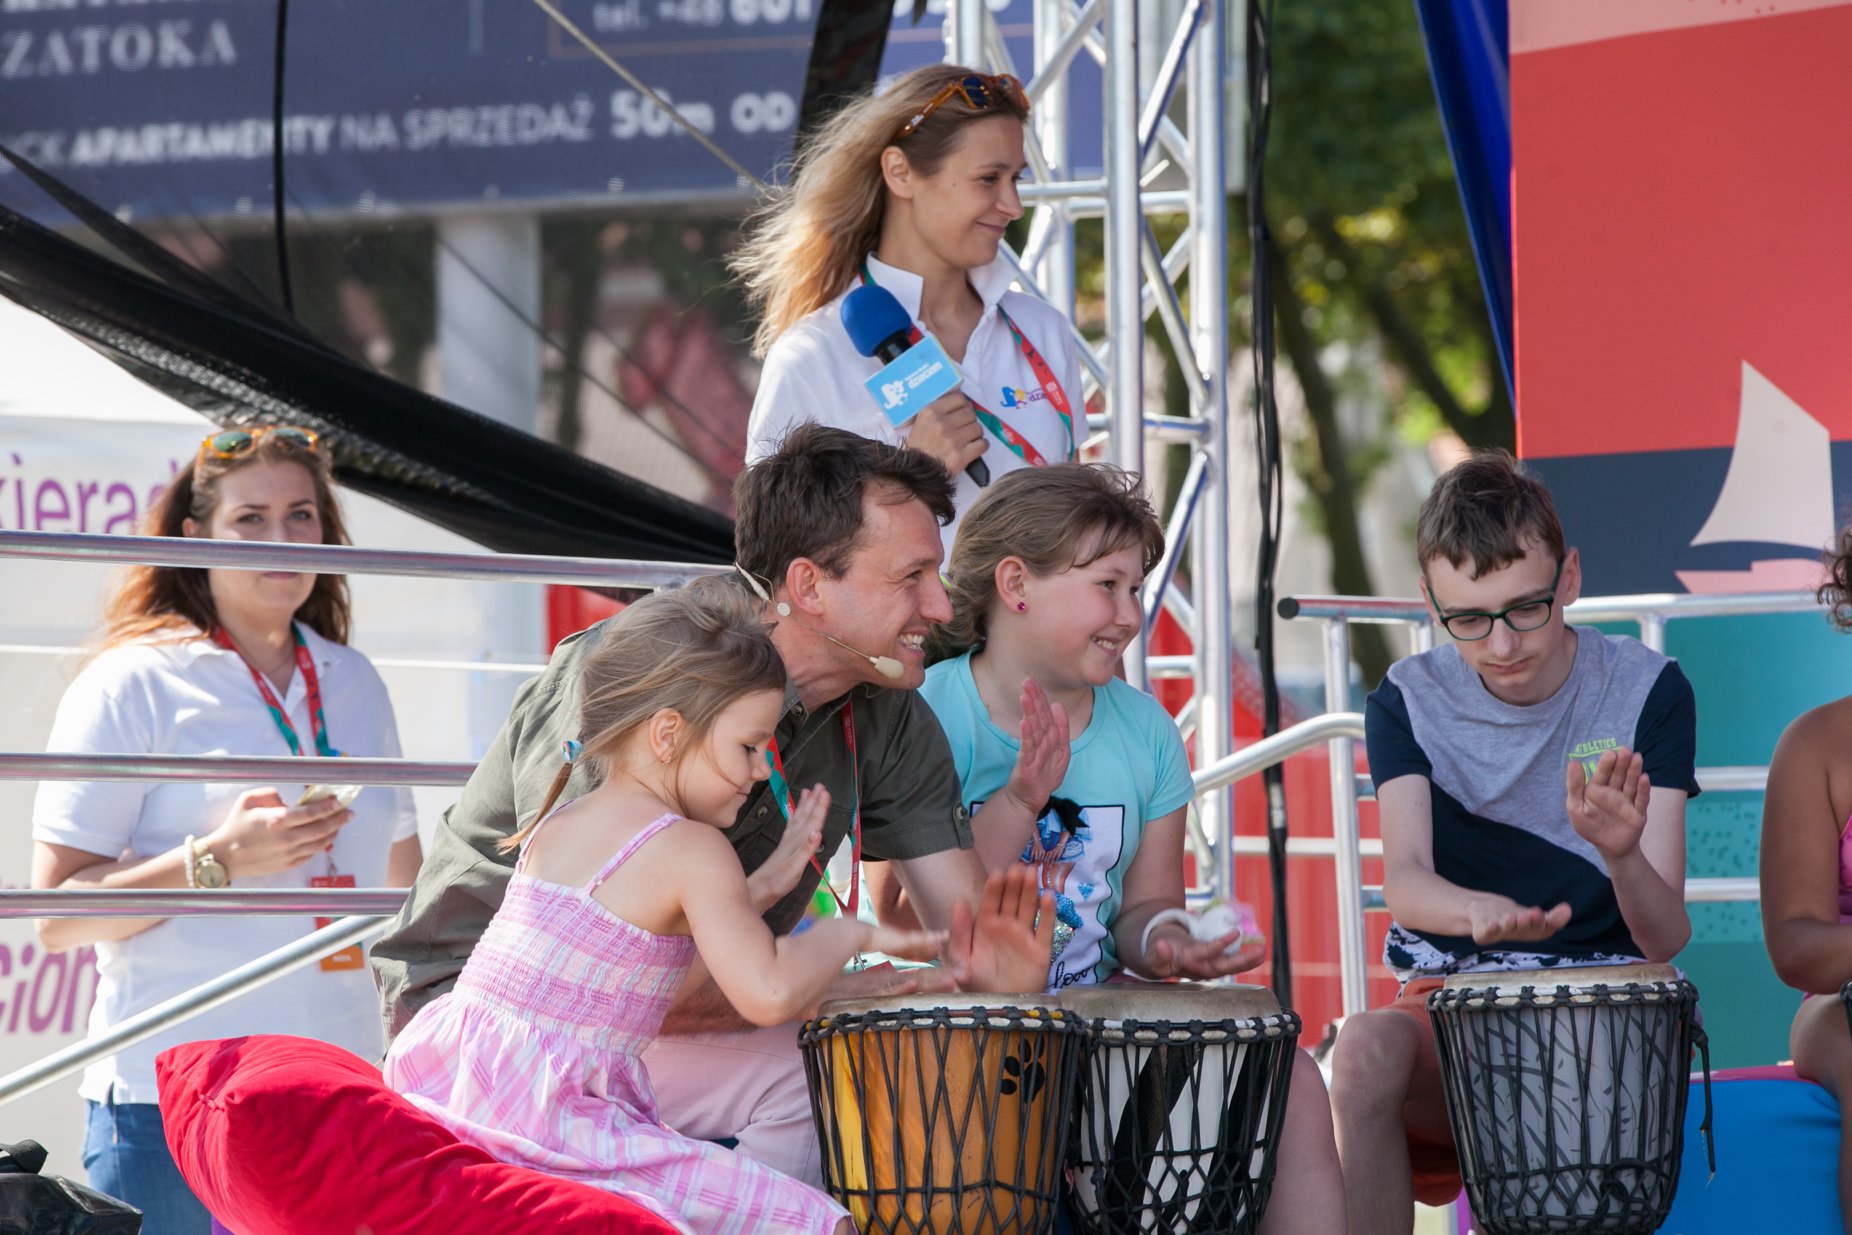 Strefa familijna "Lato z Radiem Festiwal" łączy małych i dużych